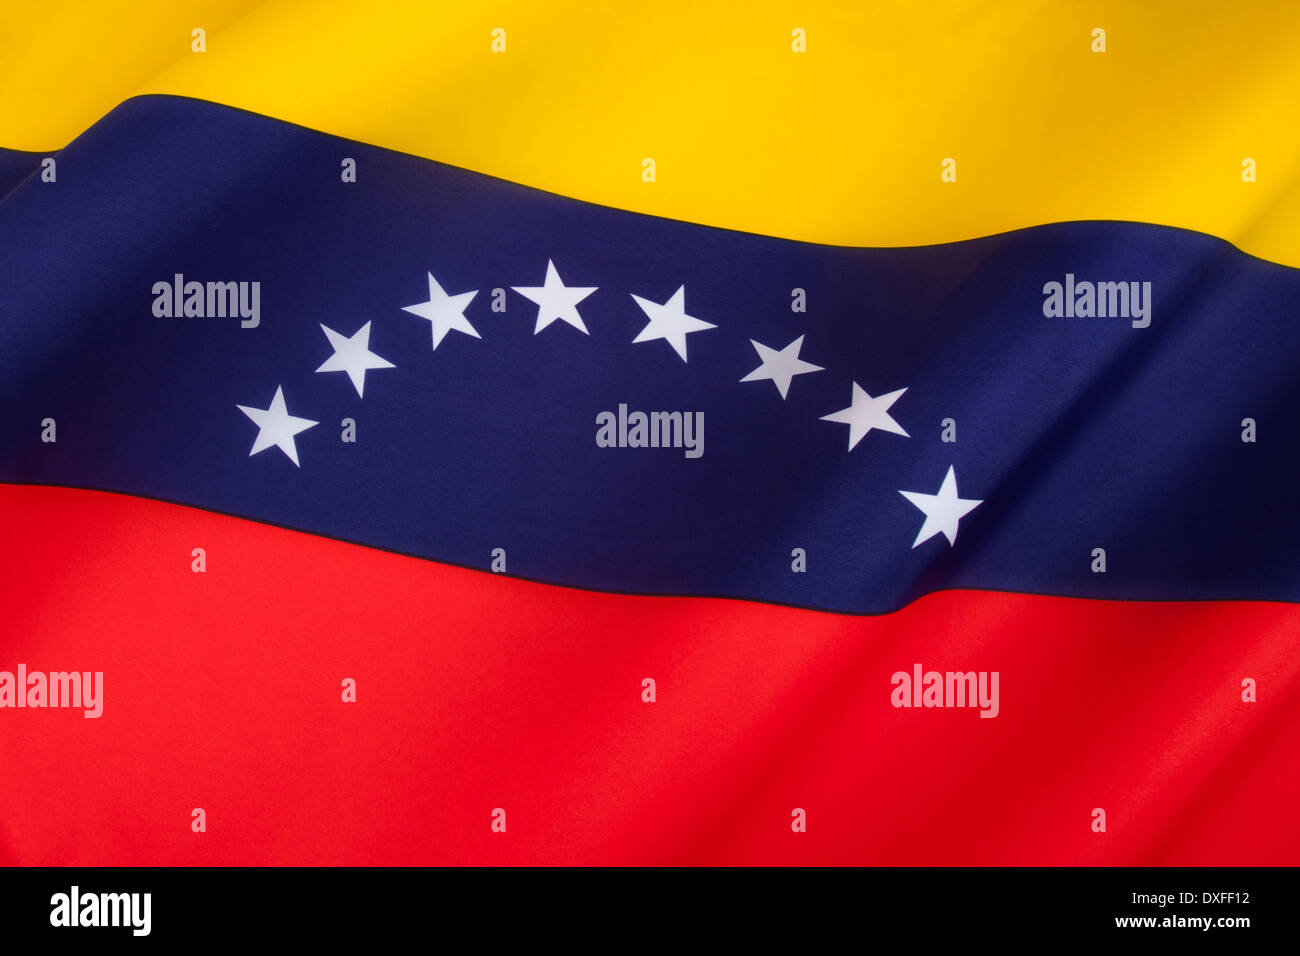 La actual bandera nacional de Venezuela fue introducido en 2006. Día de la bandera se celebra el 3 de agosto. Foto de stock